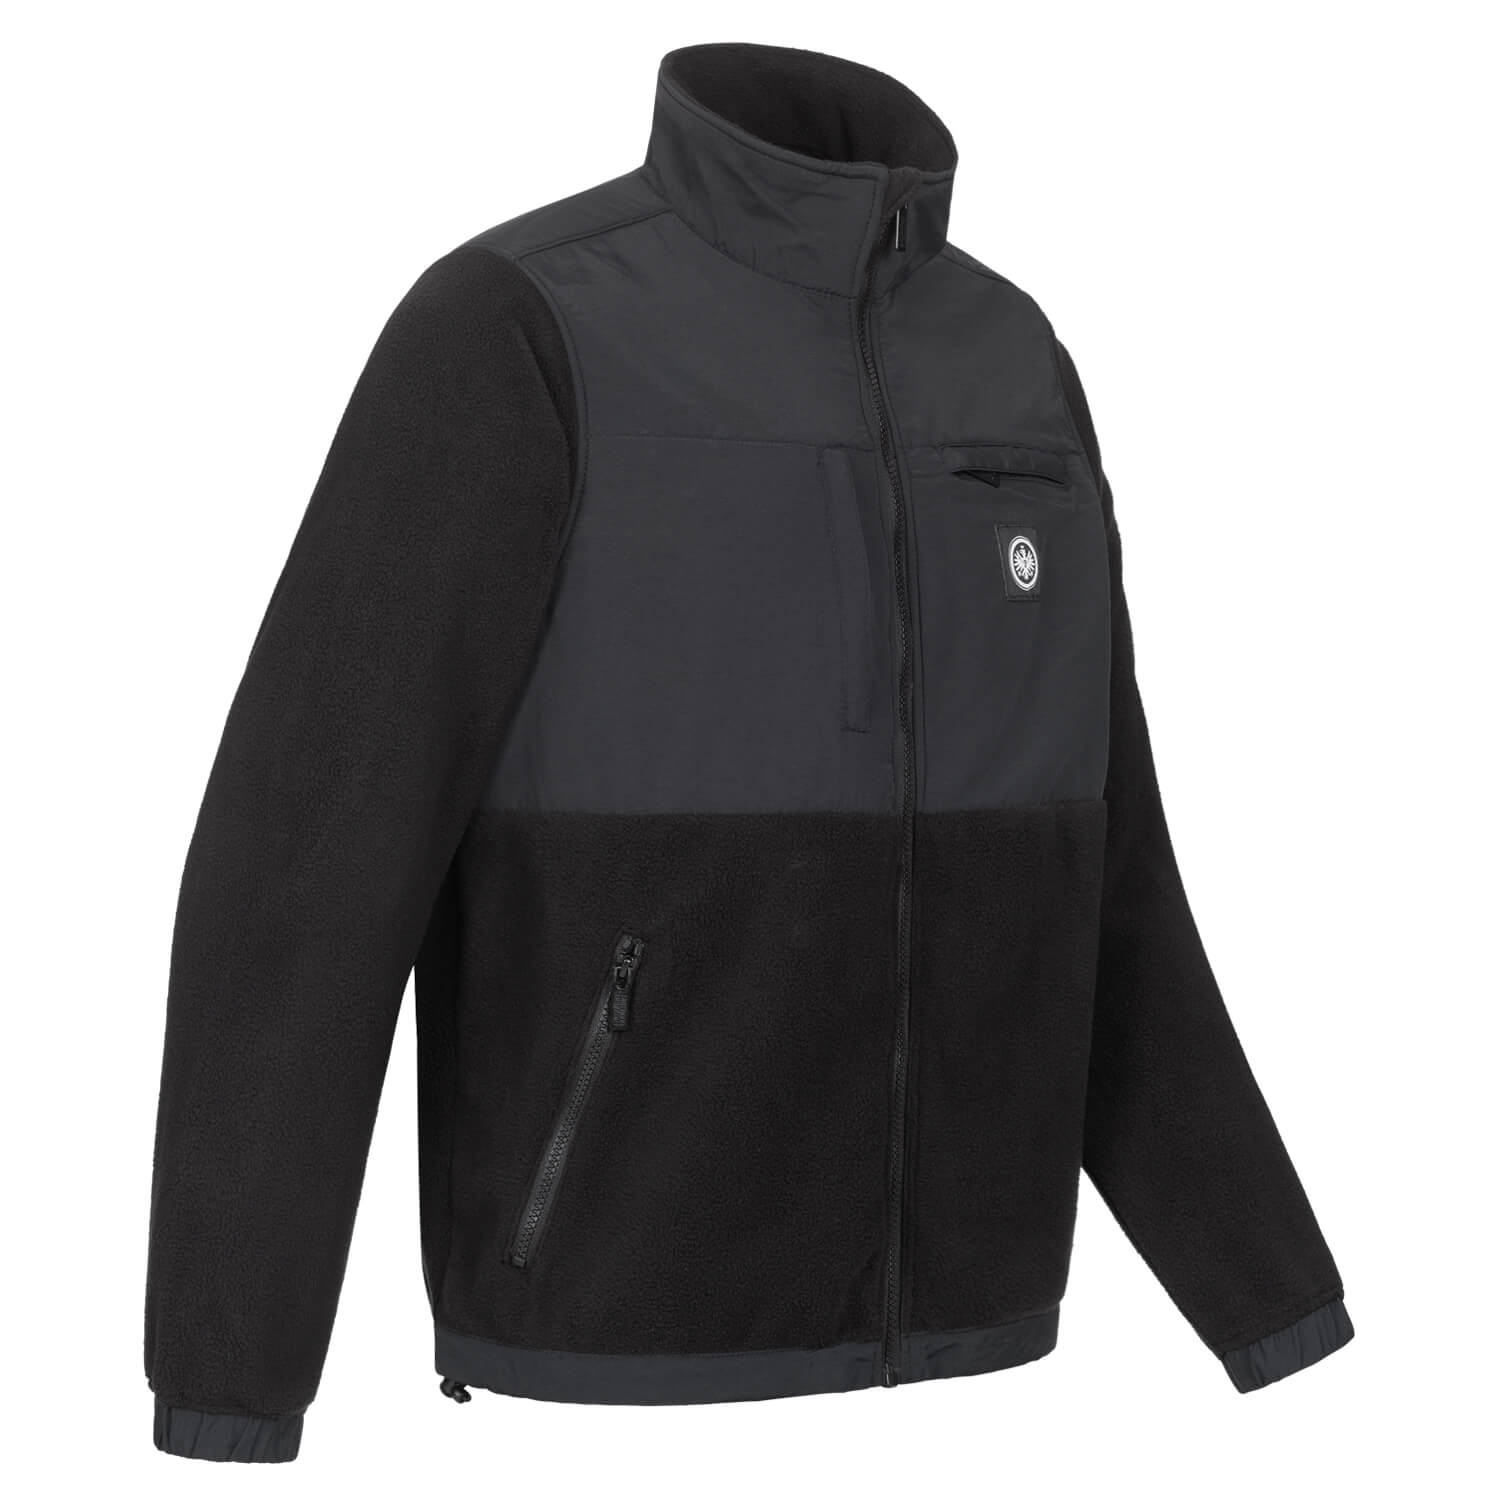 Bild 4: Premium Fleece Jacket